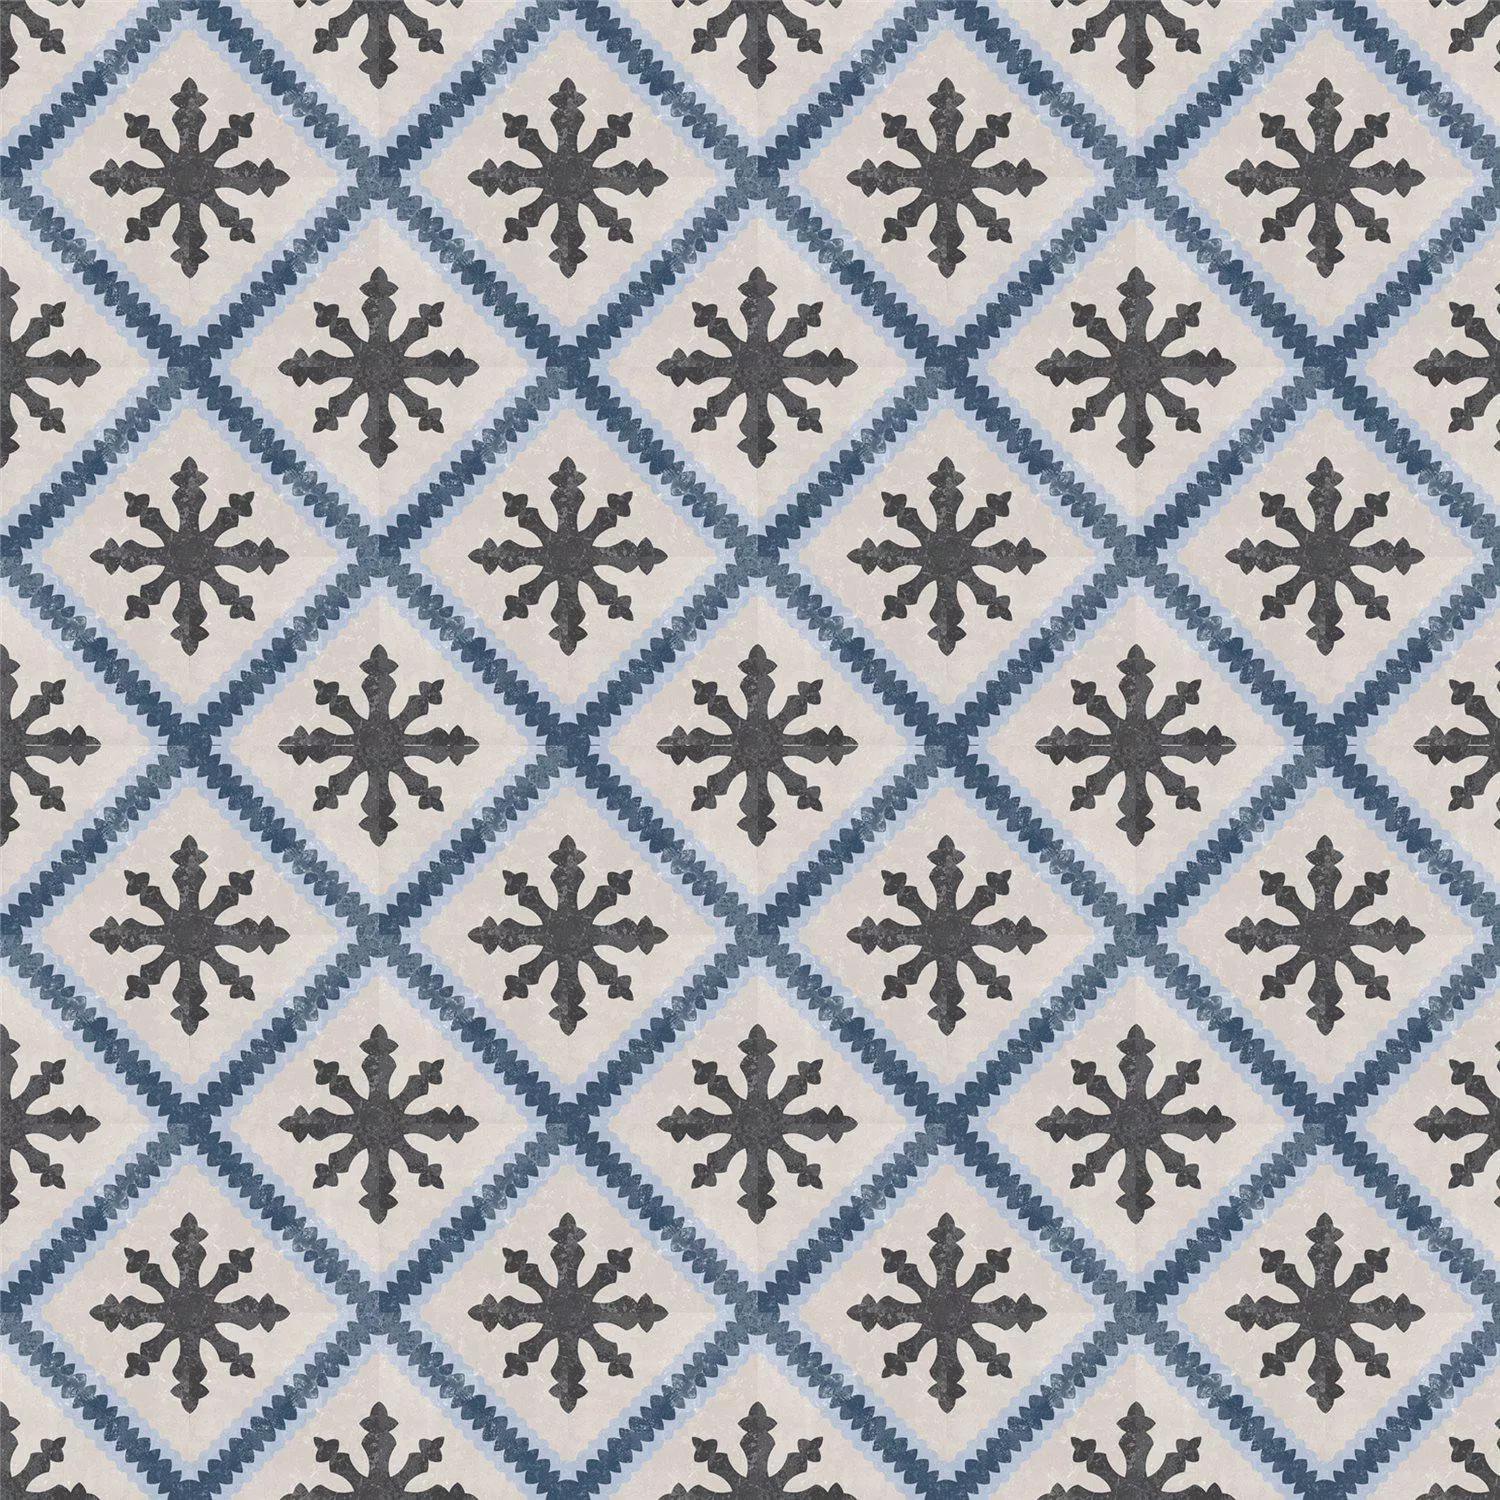 Muestra Azulejos De Cemento Aspecto Retro Toulon Pavimento Chillida 18,6x18,6cm